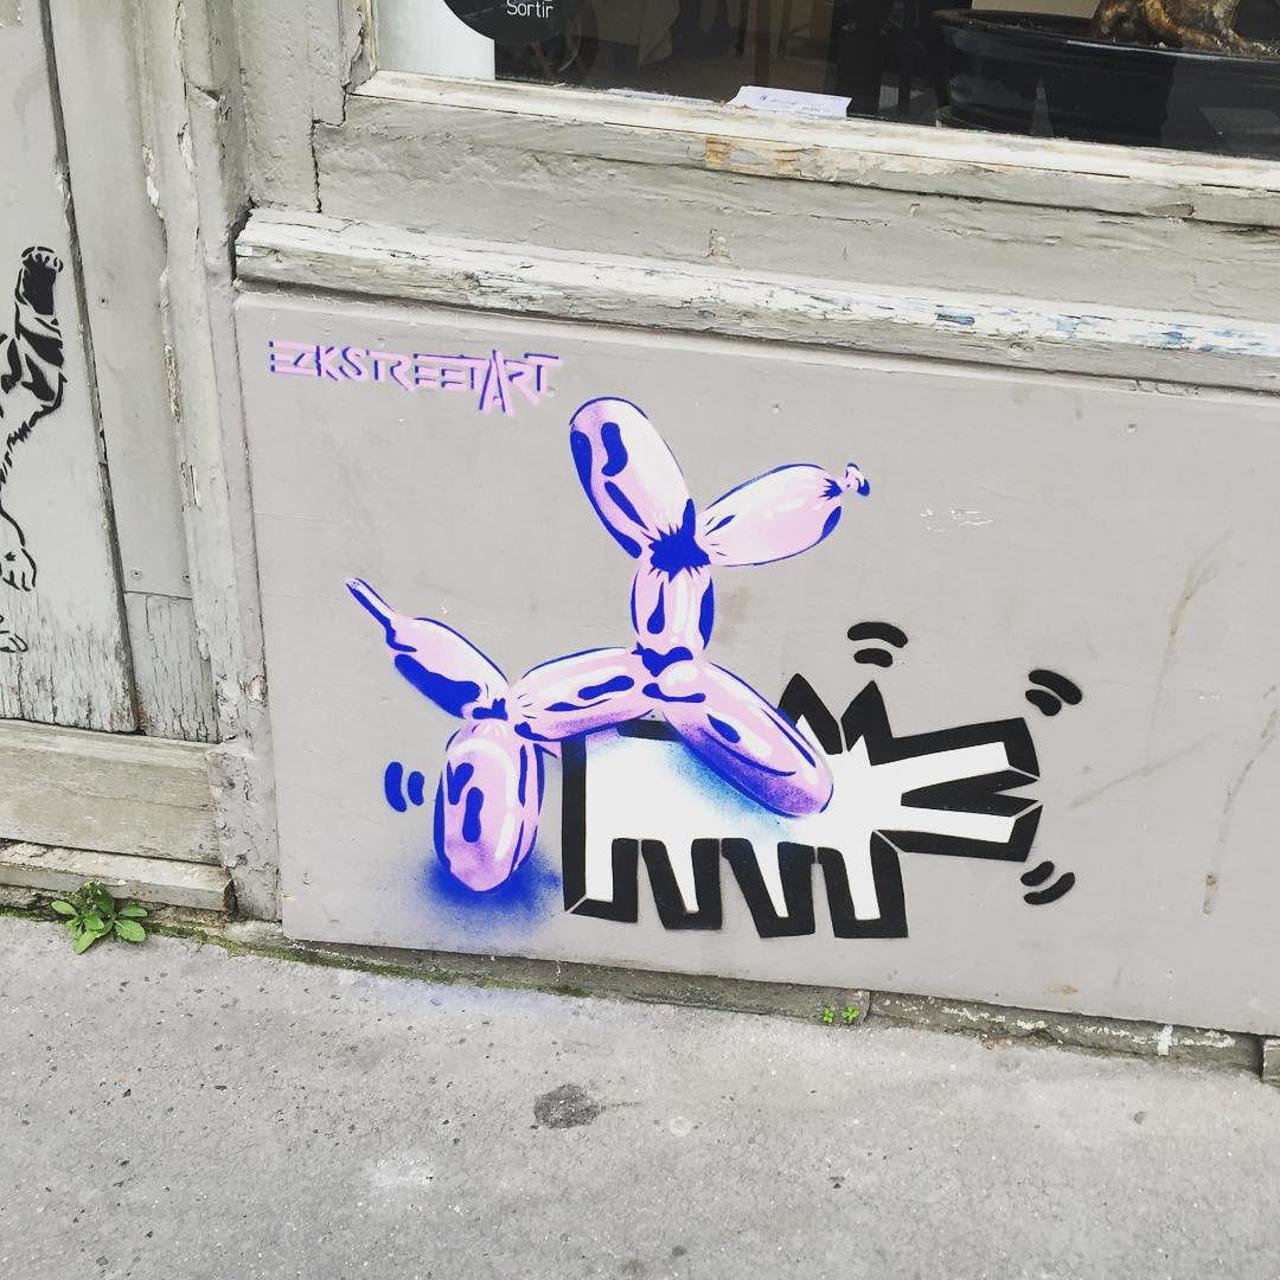 circumjacent_fr: #Paris #graffiti photo by lamoitieedeladaurade http://ift.tt/1ZOcPfP #StreetArt http://t.co/jQ9PnTLr8Q